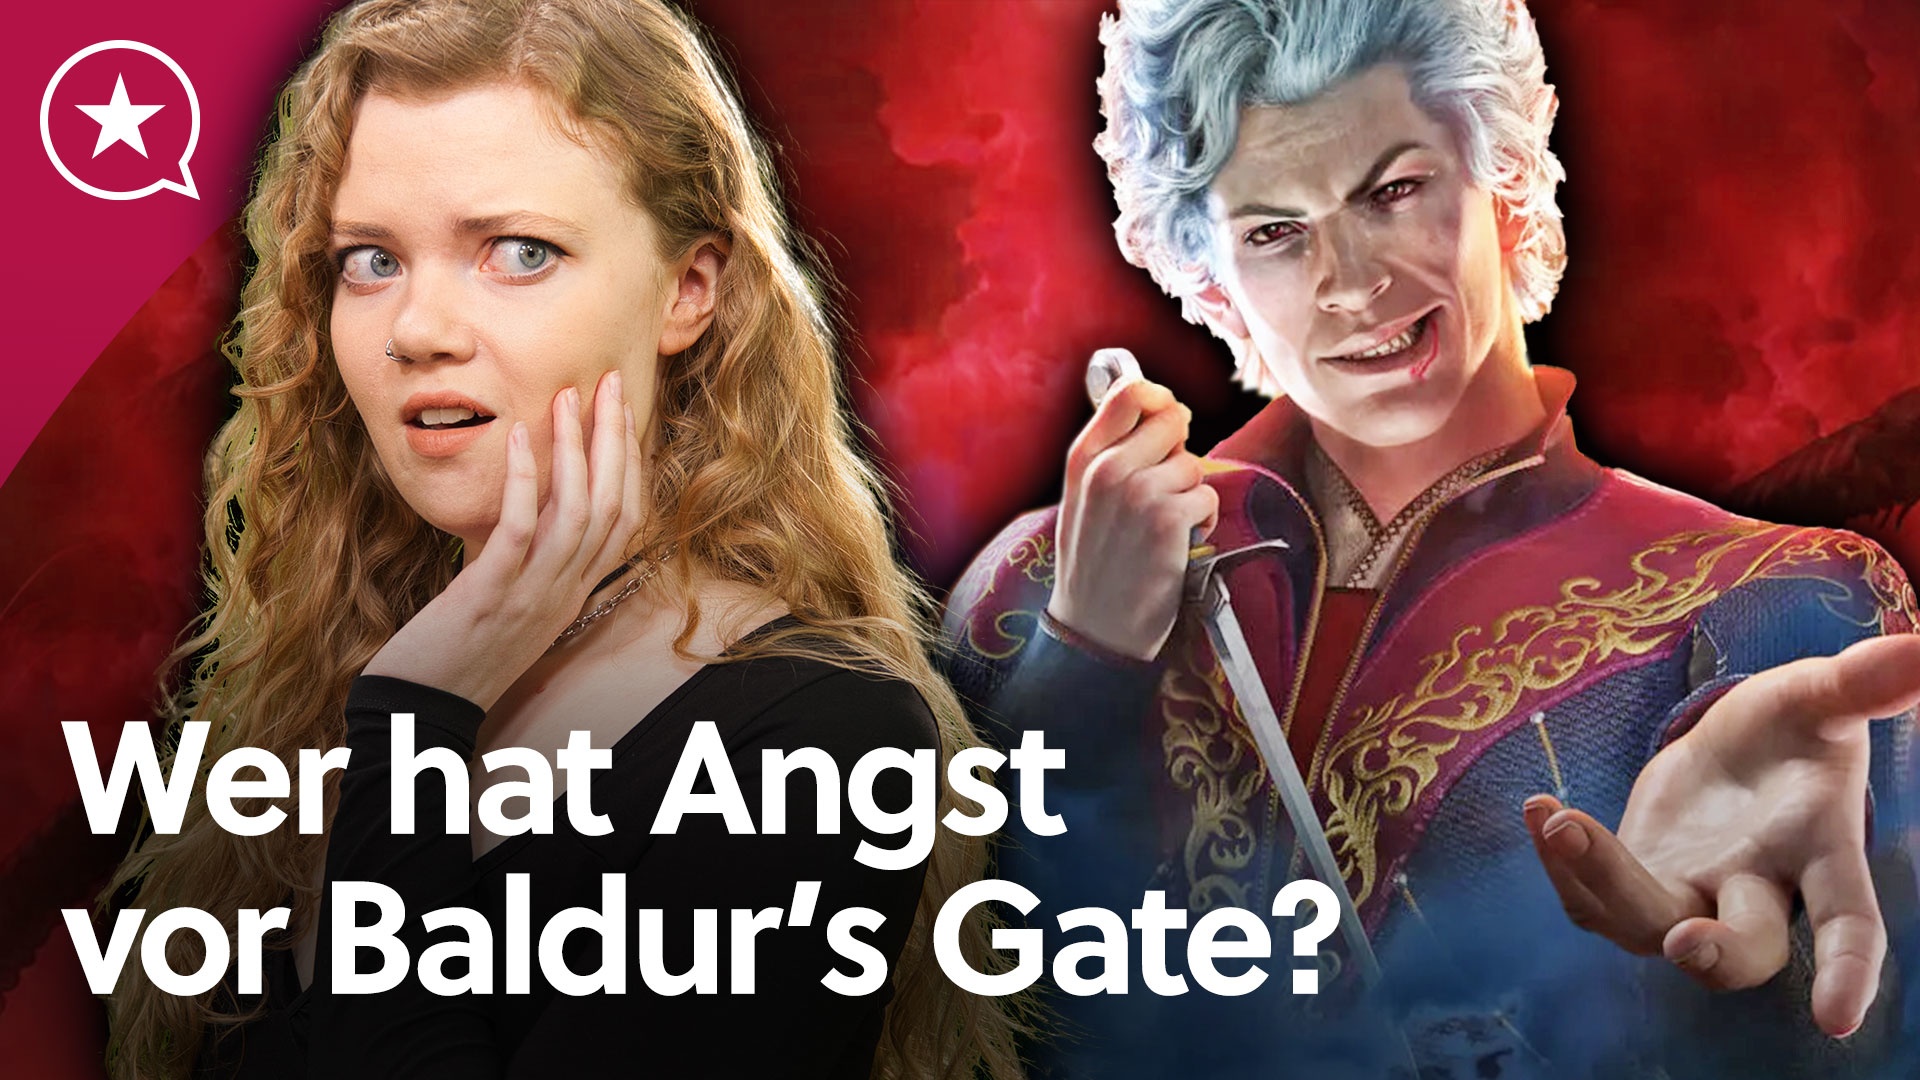 #Setzt Baldur’s Gate 3 zu hohe Rollenspiel-Maßstäbe?